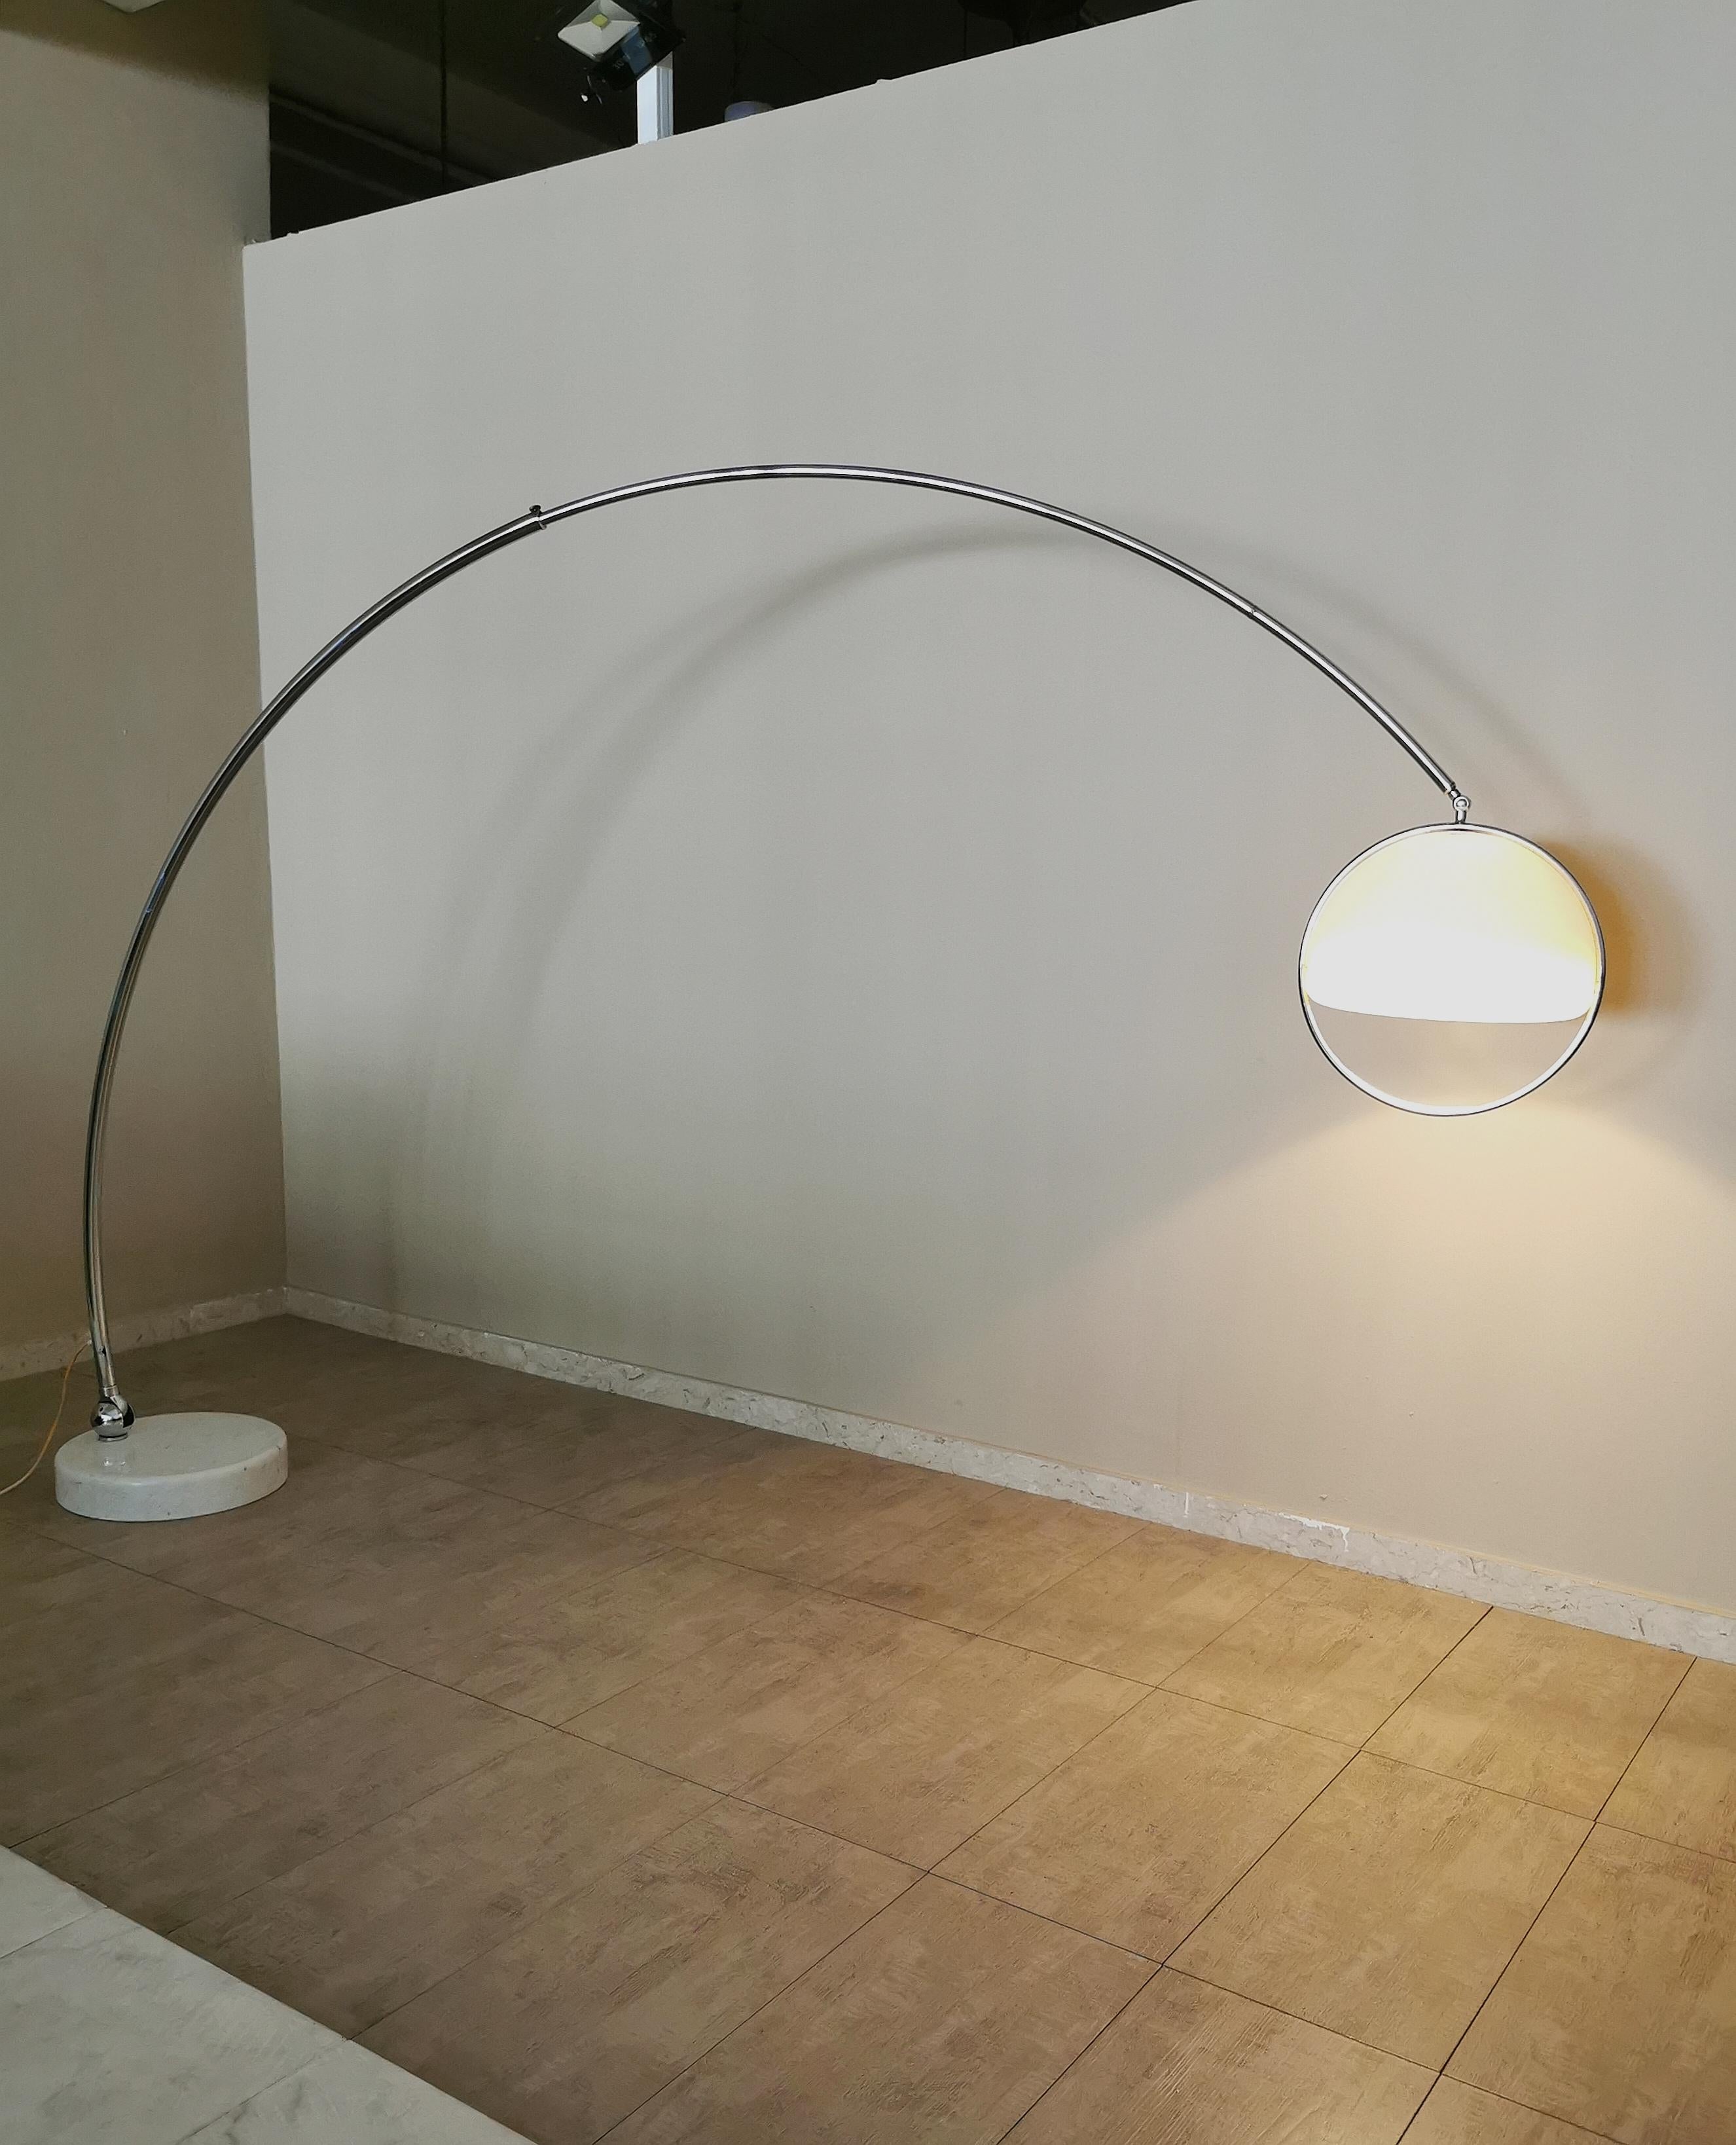  Rare lampadaire à arc de grande taille conçu par le designer italien Goffredo Reggiani. La lampe a une base ronde en marbre blanc, avec un trou pour loger la tige en métal chromé pivotante et extensible. Il se termine par un diffuseur E27 à 1